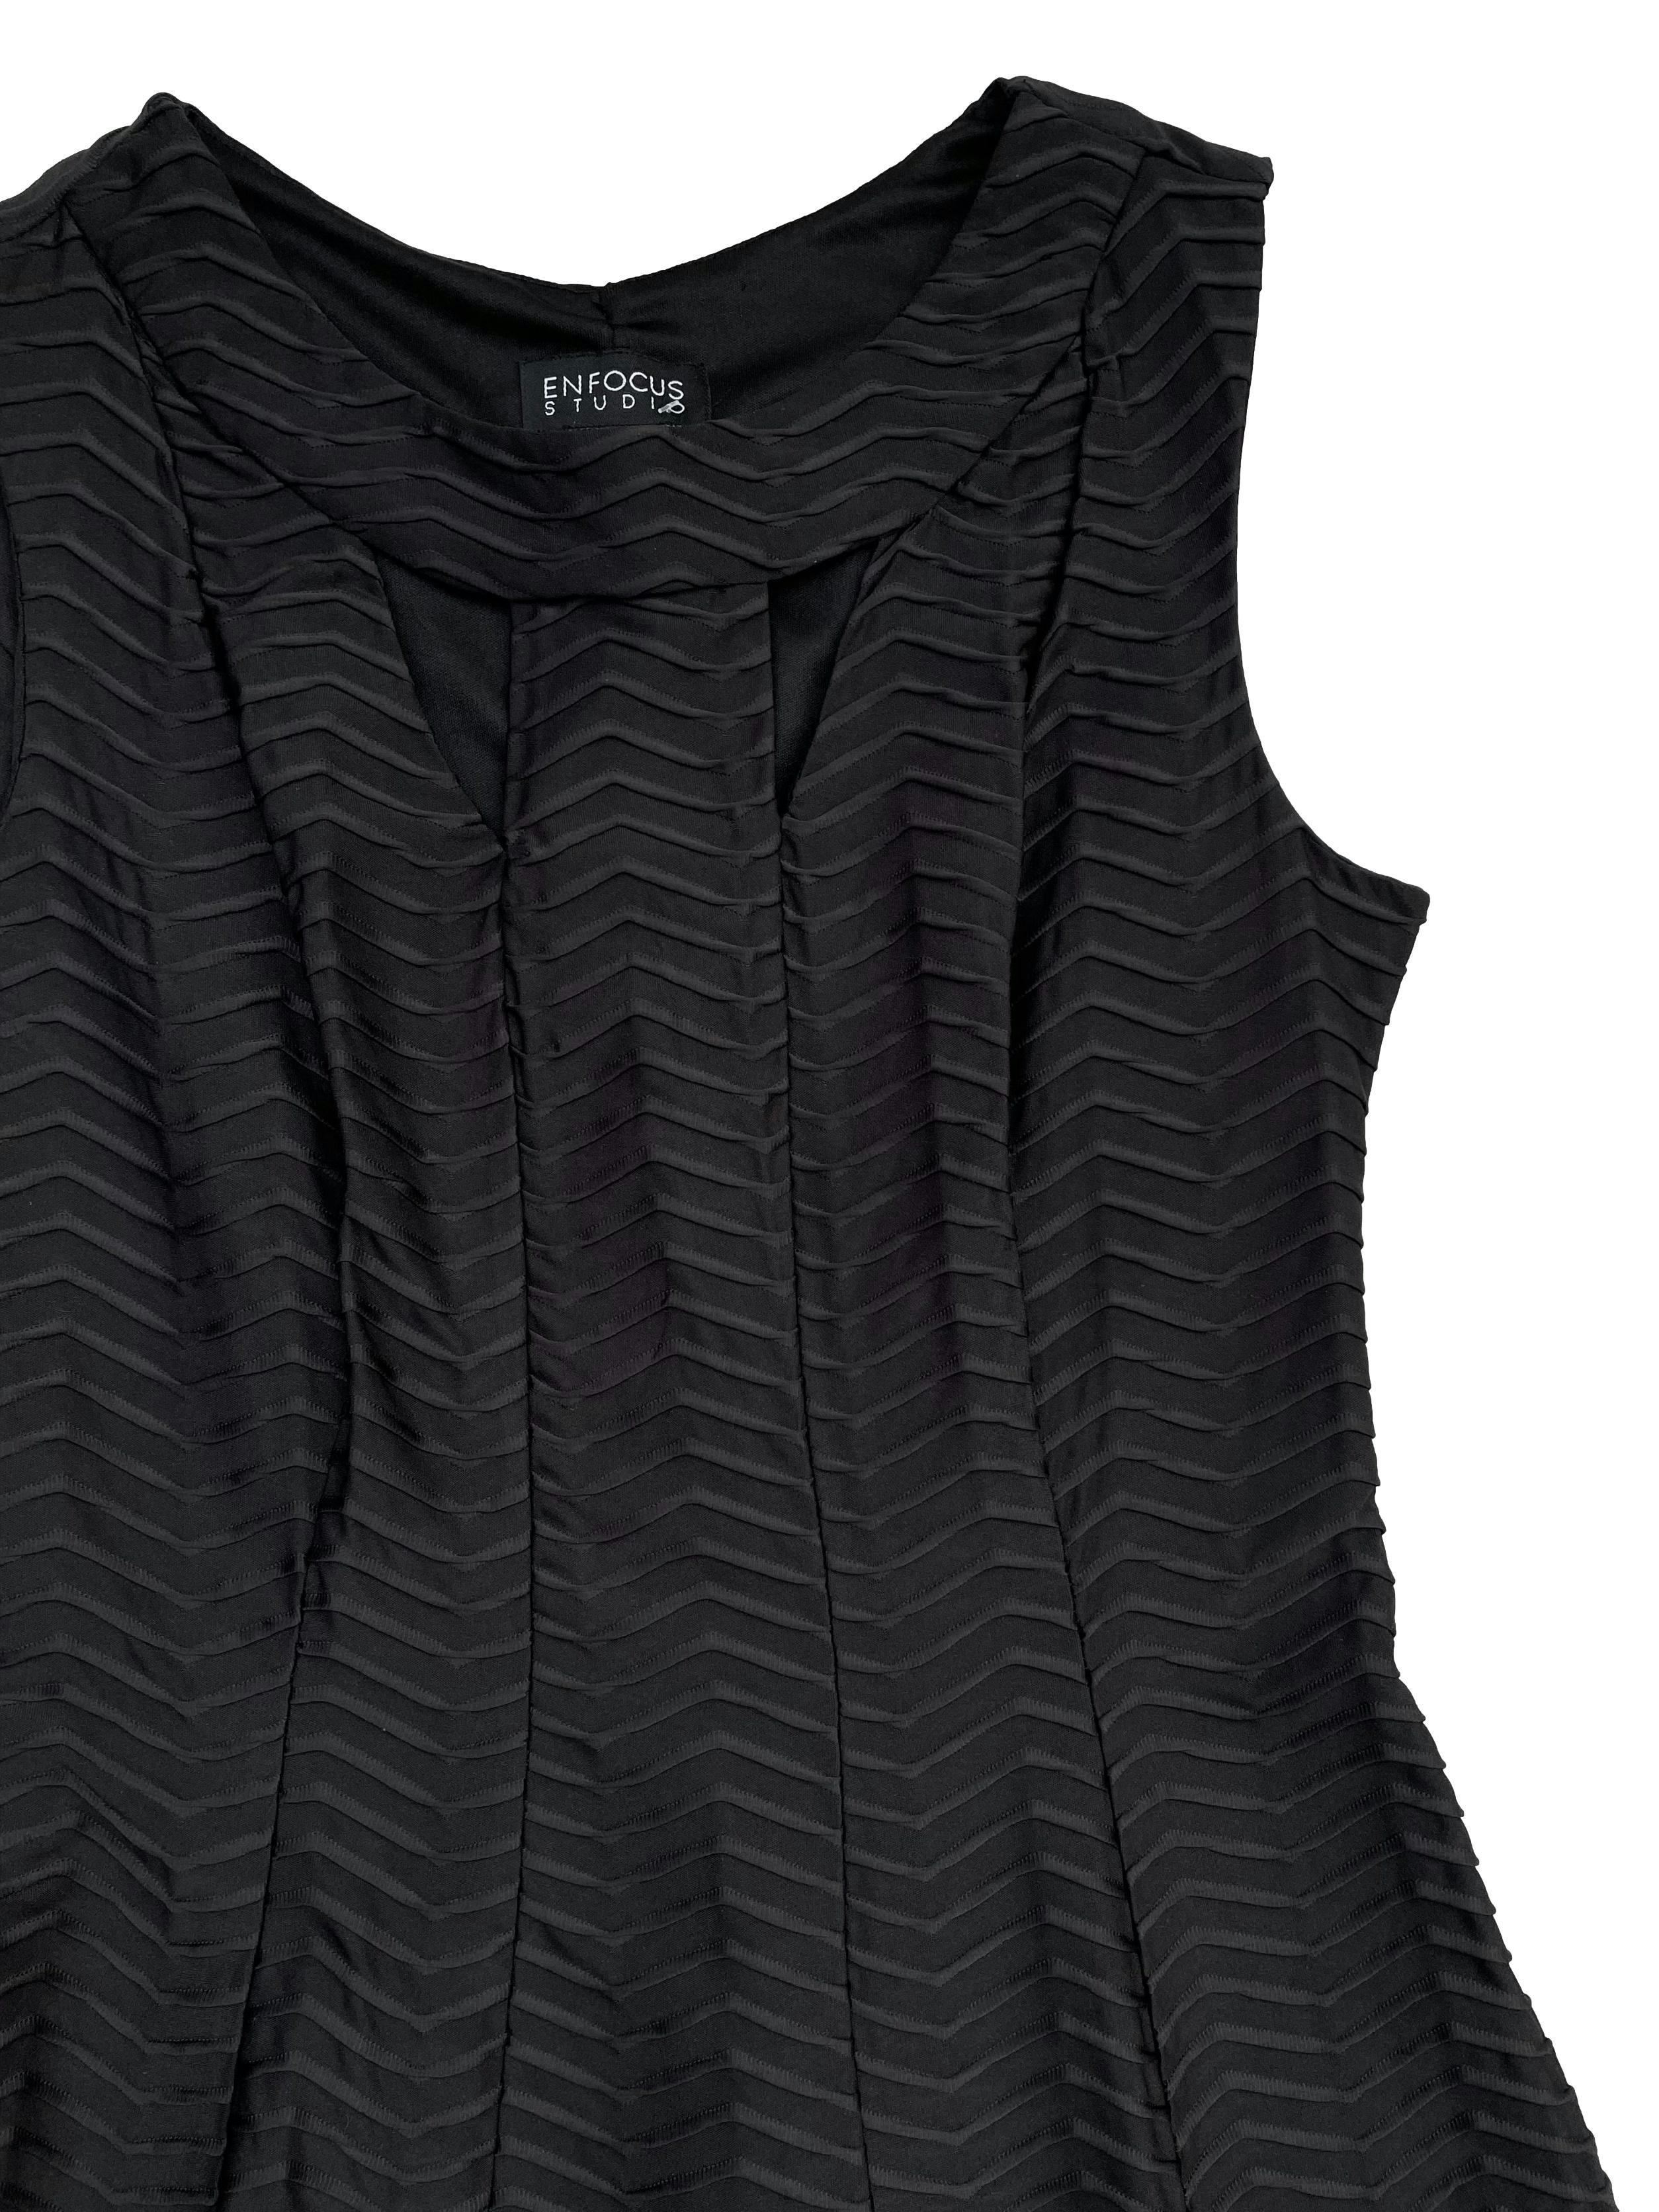 Vestido negro de tela stretch textura zig zag, con aberturas en escote y forro en la parte superior. Busto 90cm sin estirar, Largo 95cm.